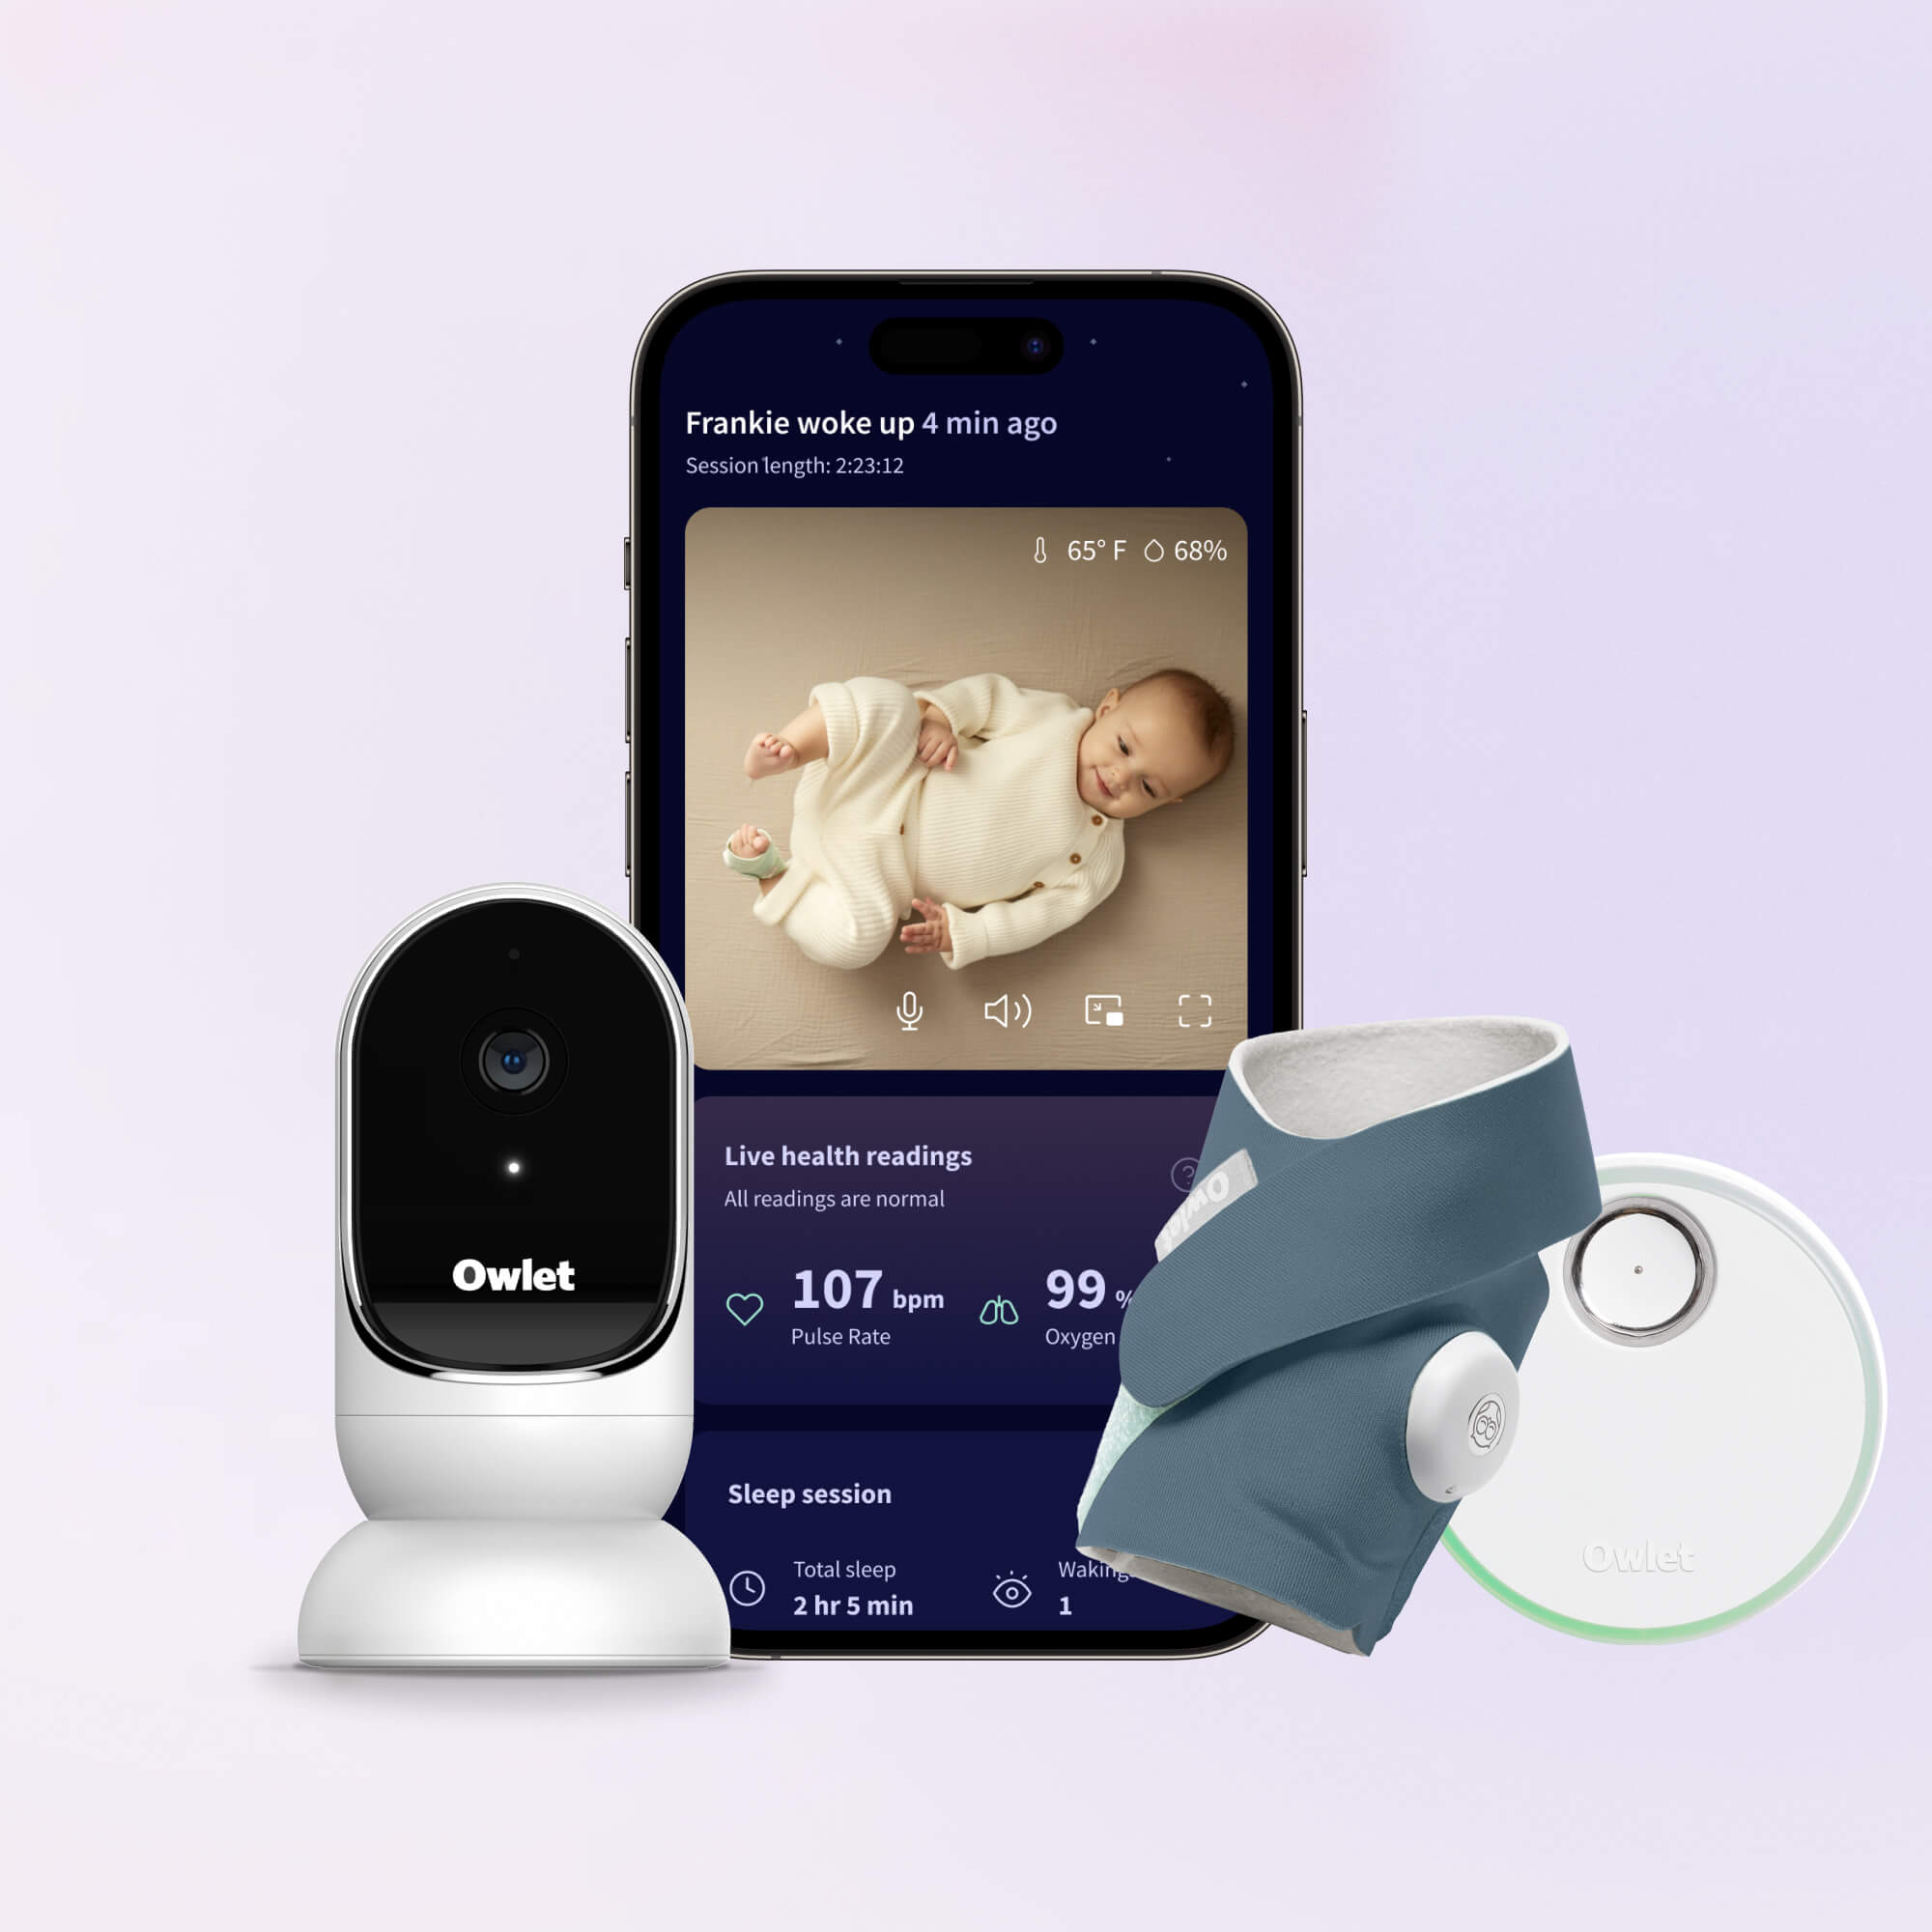 Sense-U Smart Baby Monitor (FSA / HSA Approved)